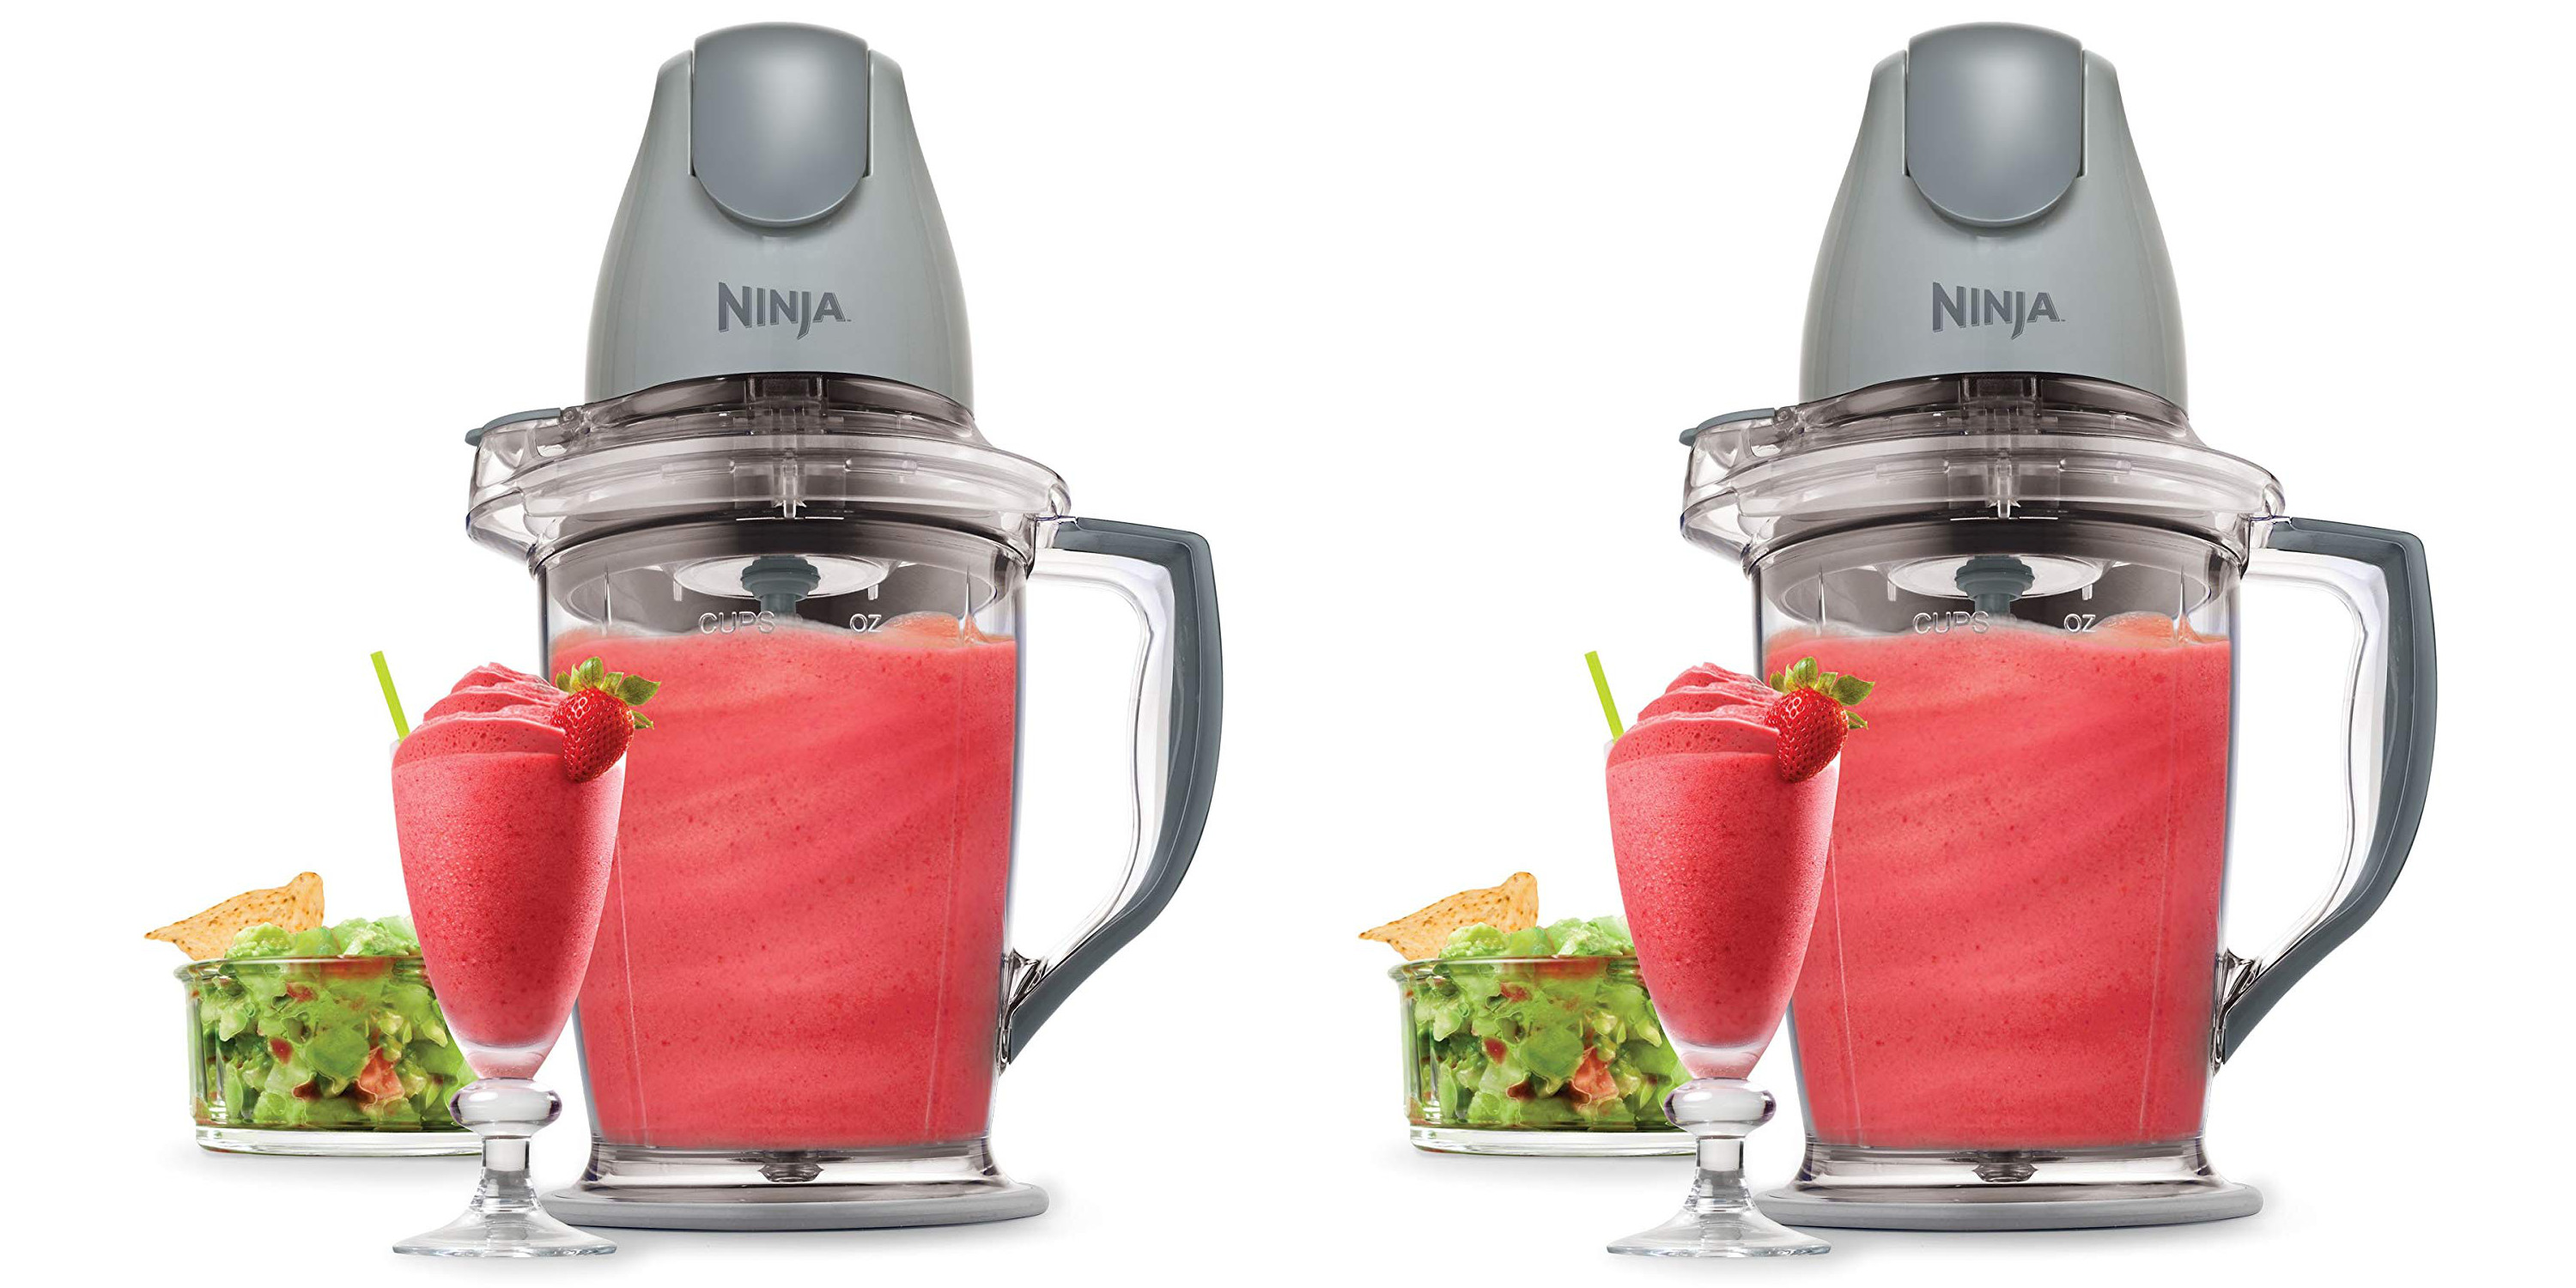 ninja smoothie blender as food processor